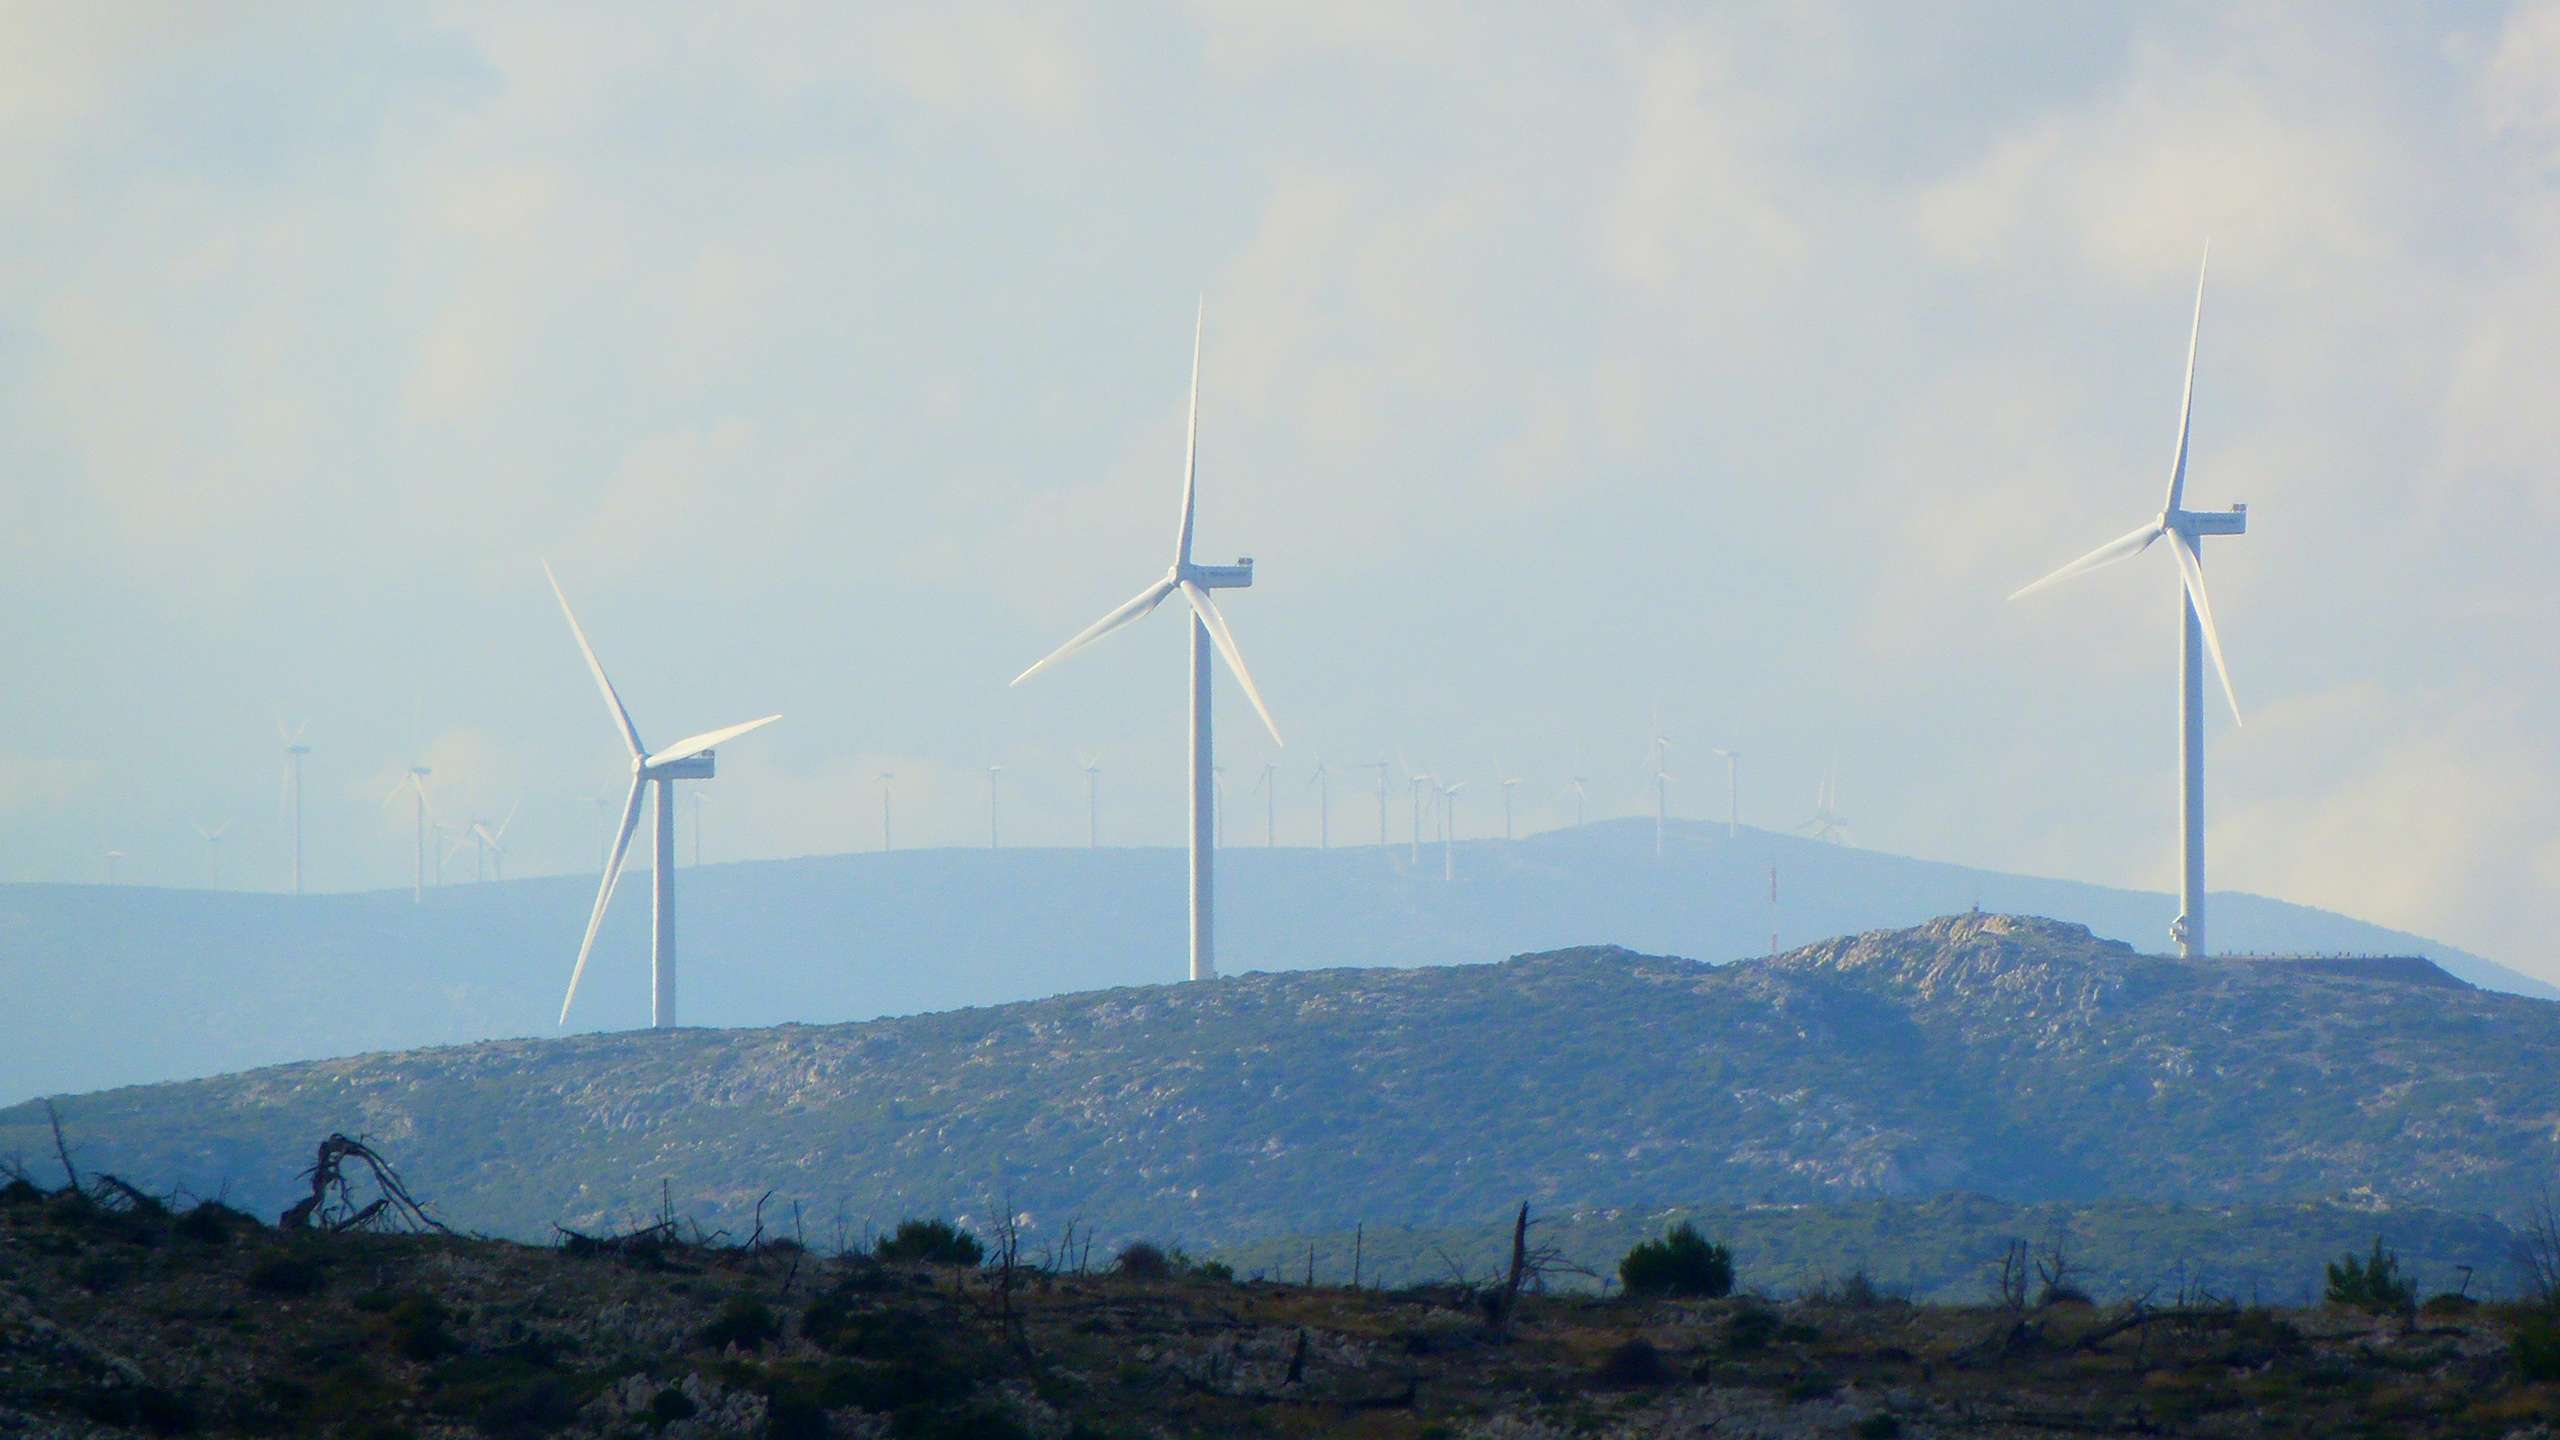 Tre turbine eoliche si ergono su una collina. Il cielo è nuvoloso e colora il paesaggio di blu e grigio.